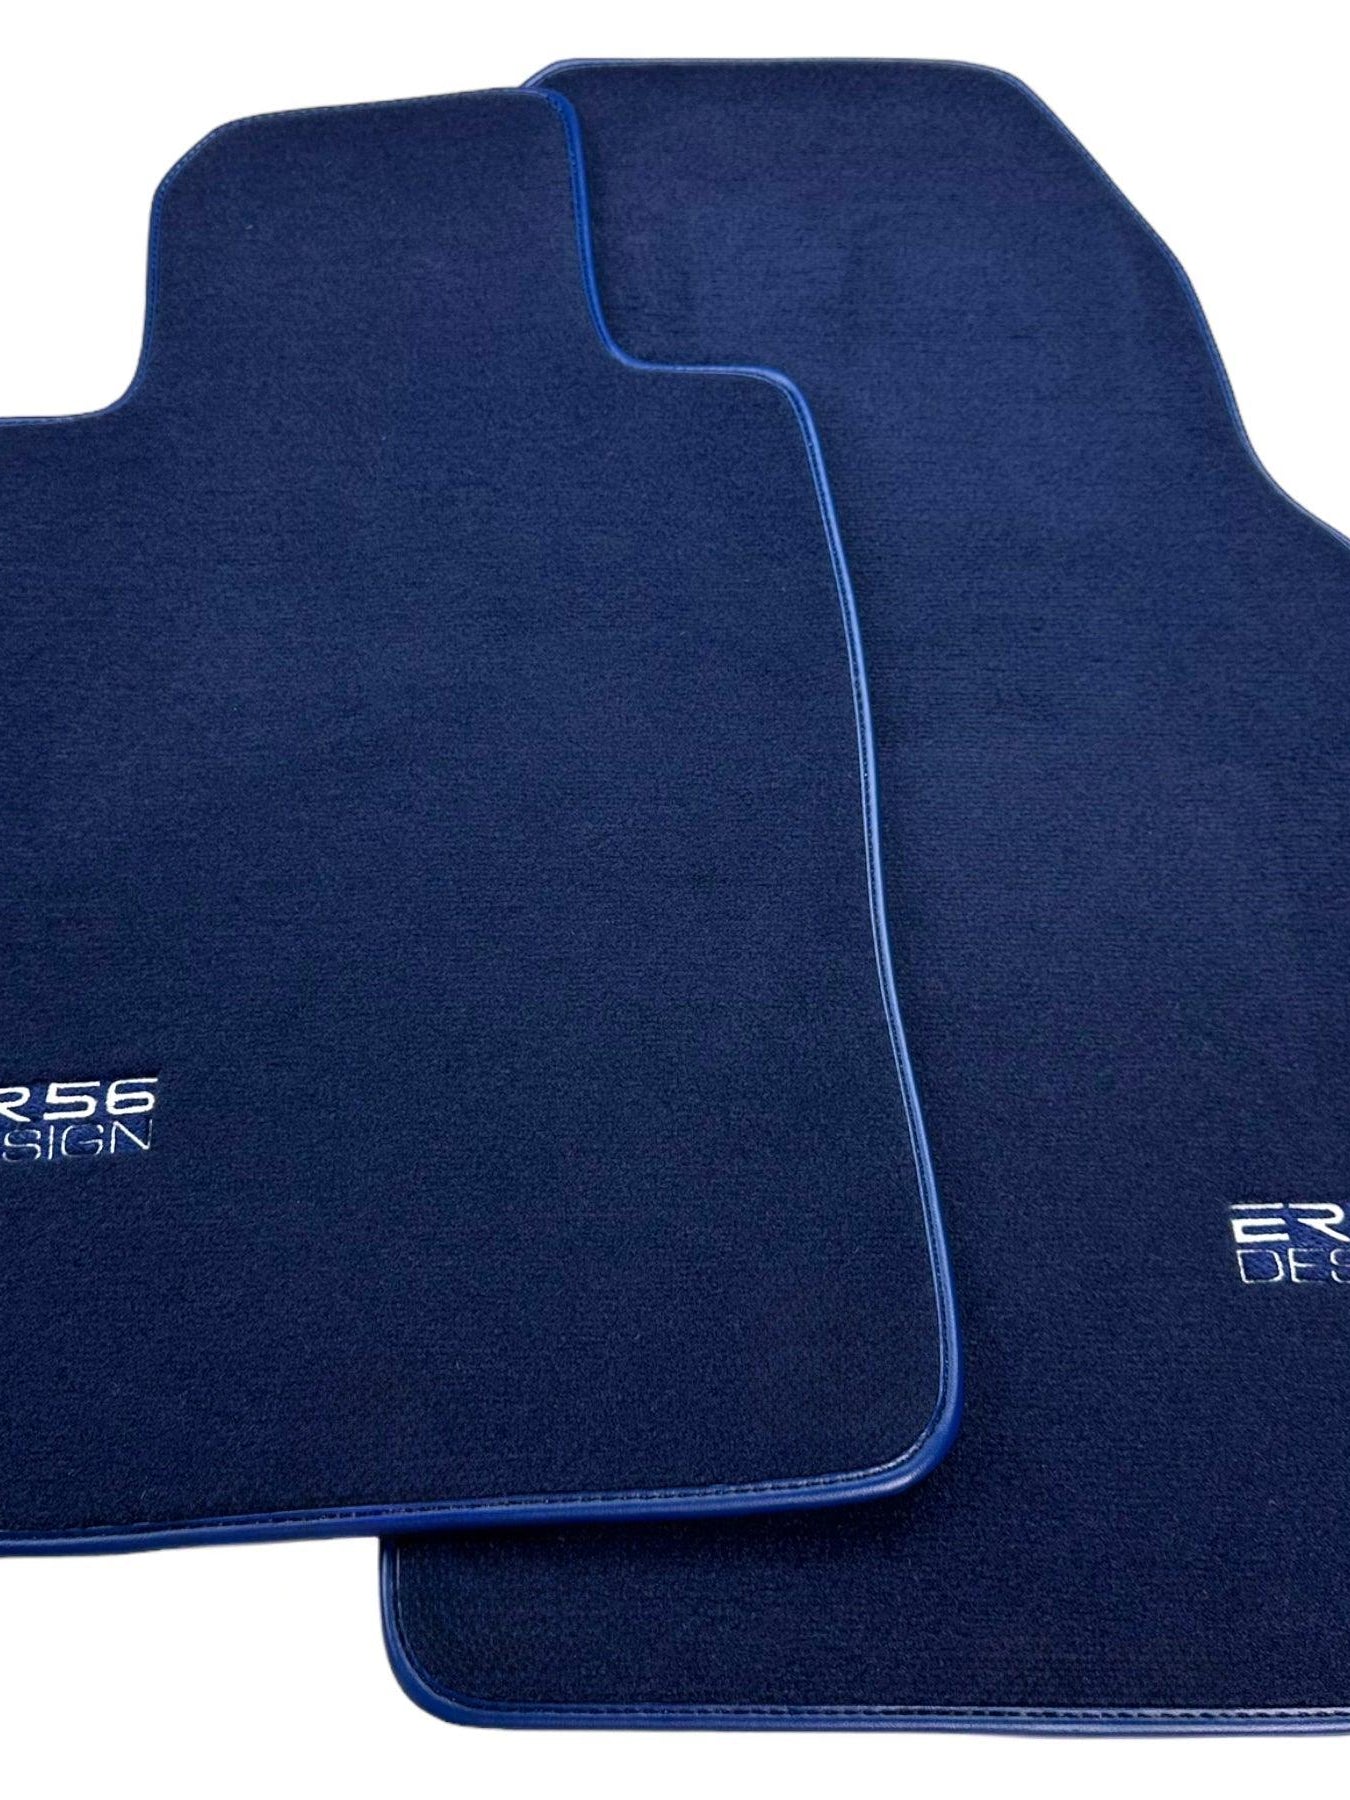 Dark Blue Floor Mats for Porsche 987 Boxster (2005-2012) | Er56 Design - AutoWin